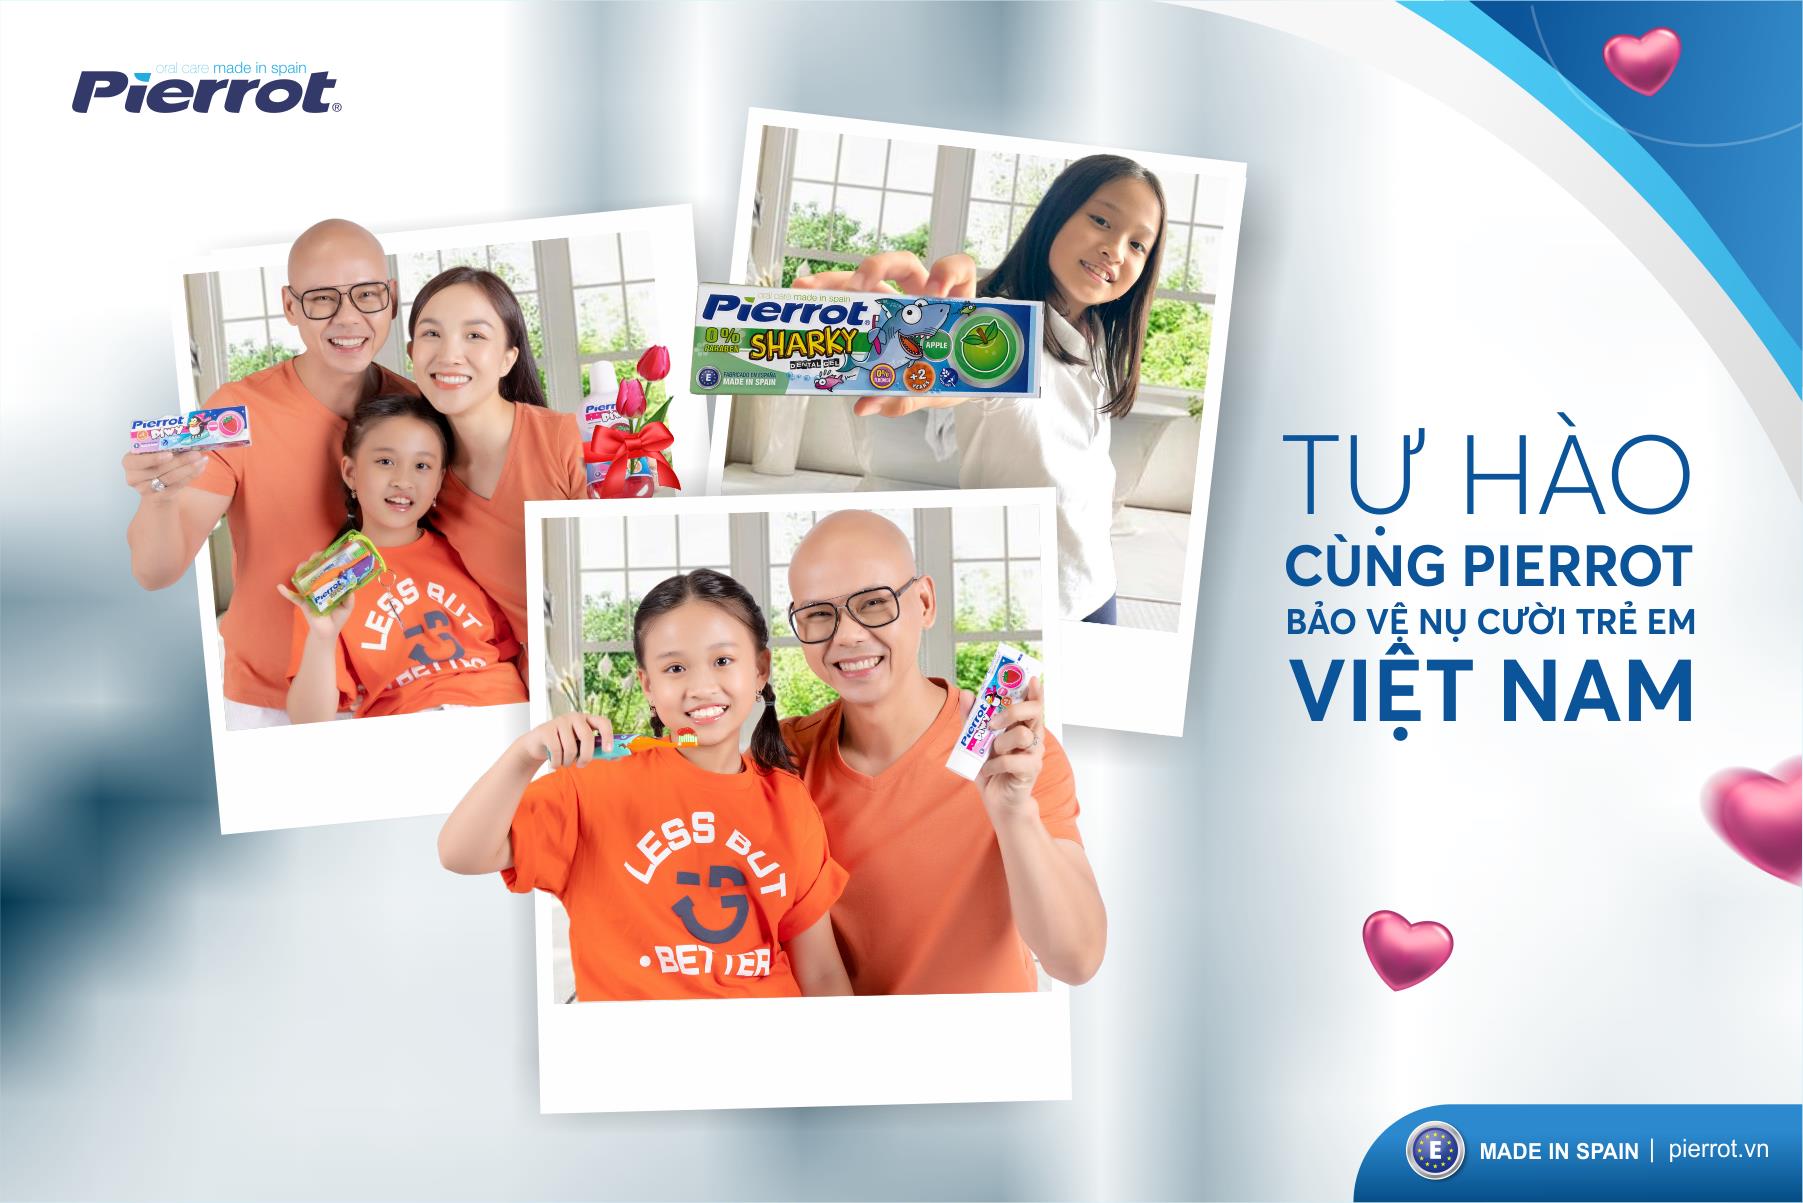 Ca sĩ Phan Đinh Tùng đồng hành cùng Pierrot bảo vệ nụ cười trẻ em Việt Nam - Ảnh 3.